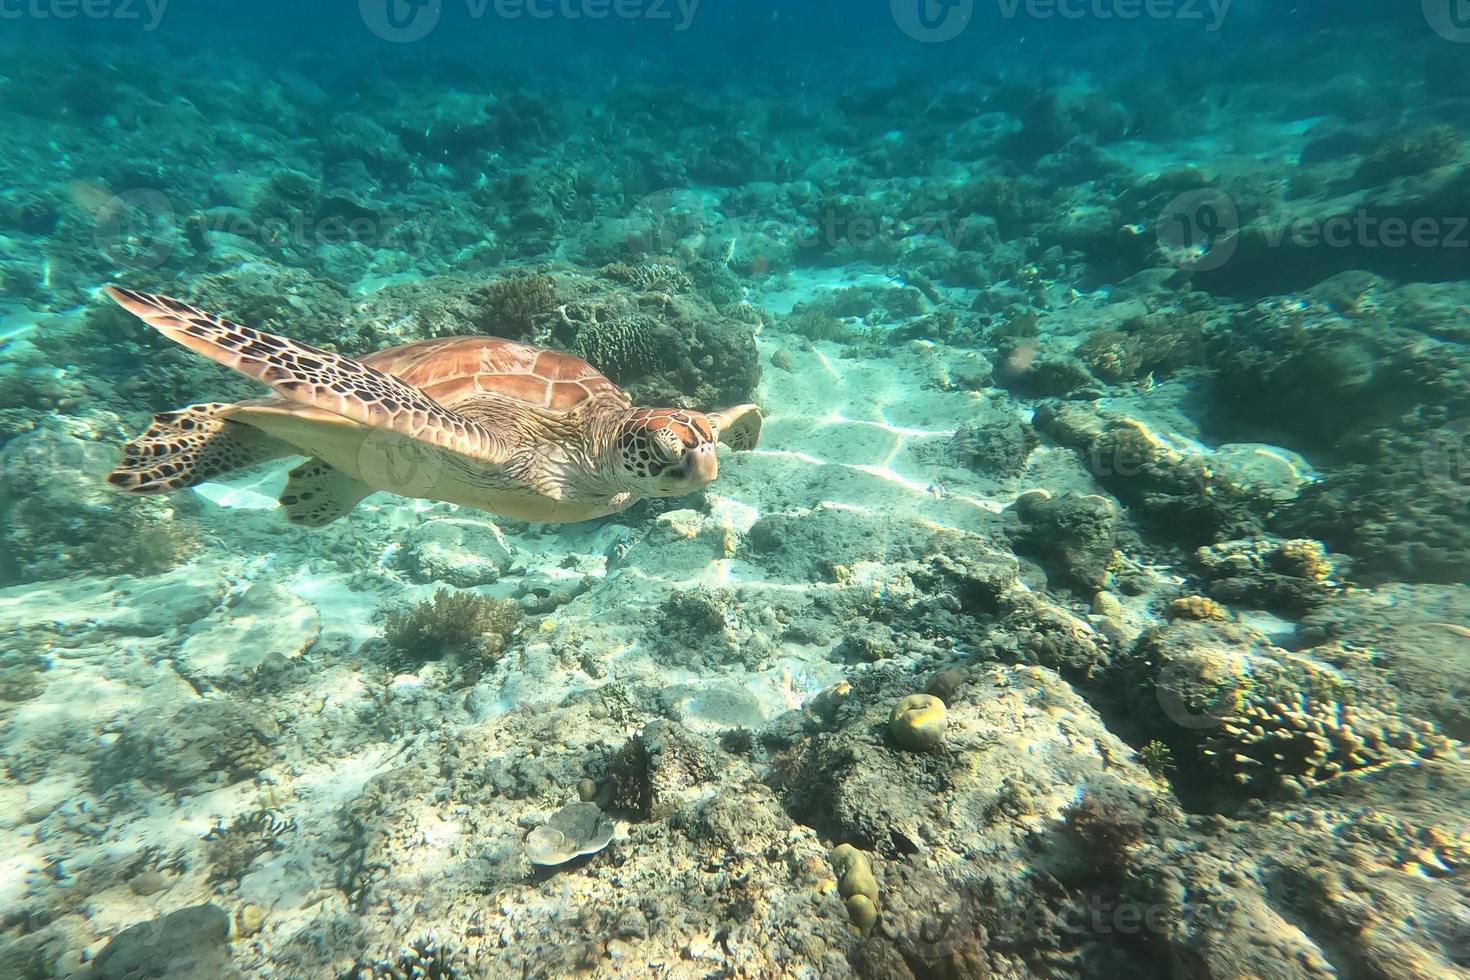 tartaruga marina in via di estinzione che naviga nell'acqua del mare turchese a gili trawangan, lombok, indonesia. mondo sott'acqua. foto